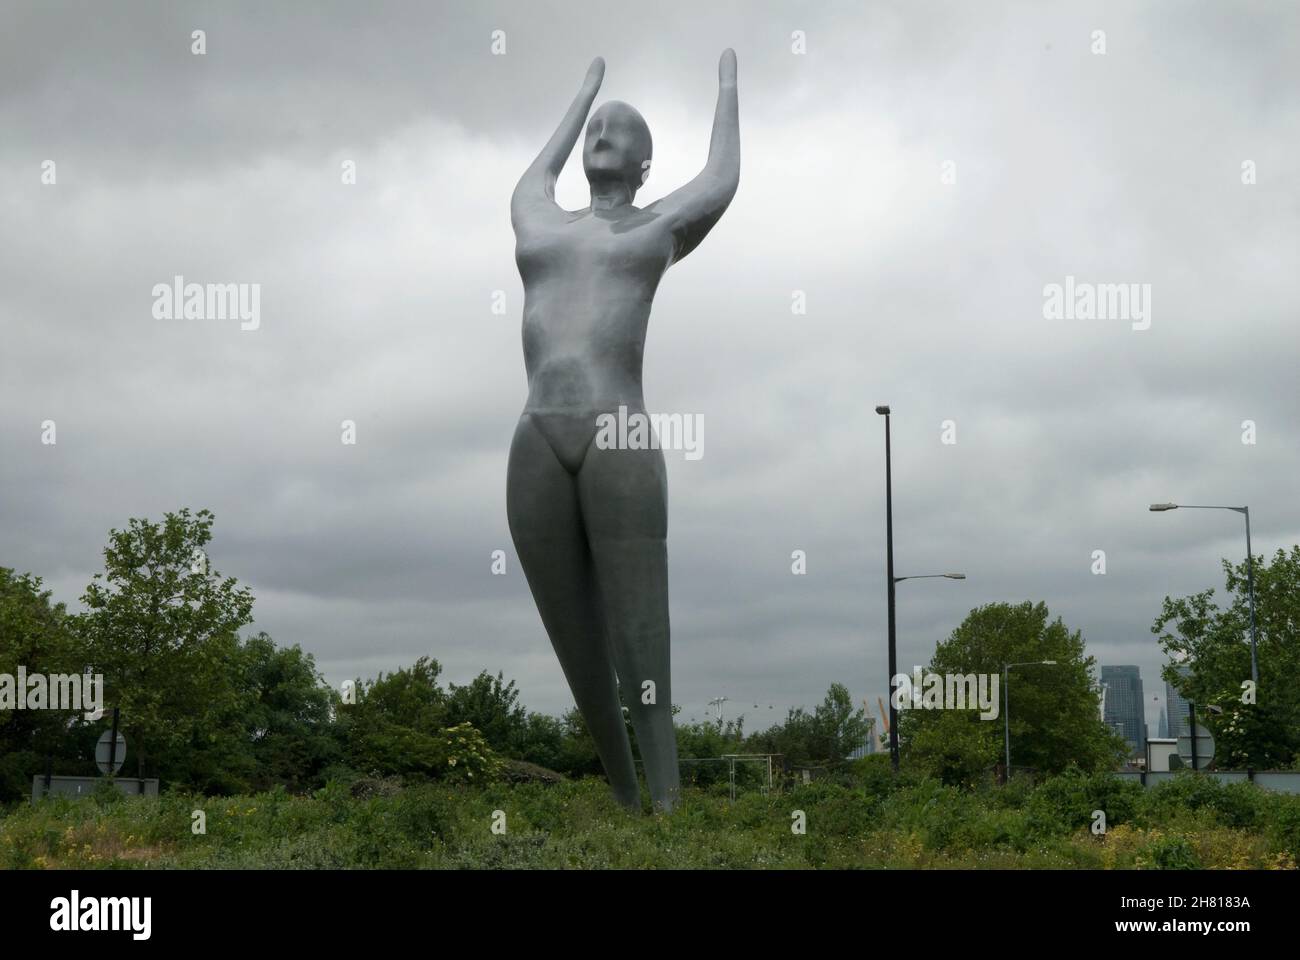 Athene höchste bronzegraue Skulptur in Großbritannien, vom Künstler Nasser Azam in der Nähe des London City Airport in Silvertown, East London 2013, 2010s HOMER SYKES Stockfoto